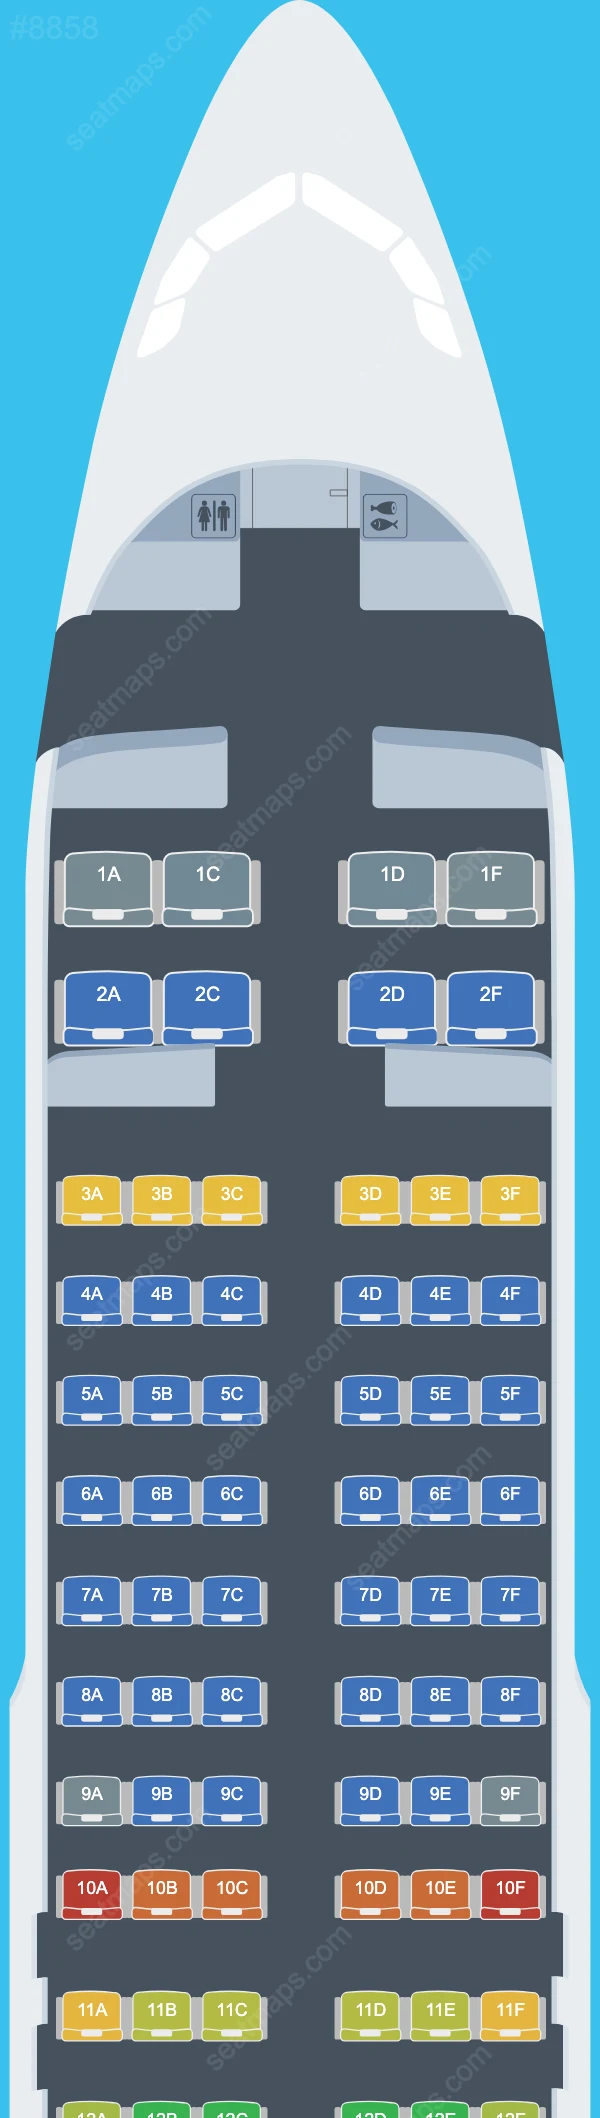 Air Travel Airbus A320 Plan de Salle A320-200 V.1